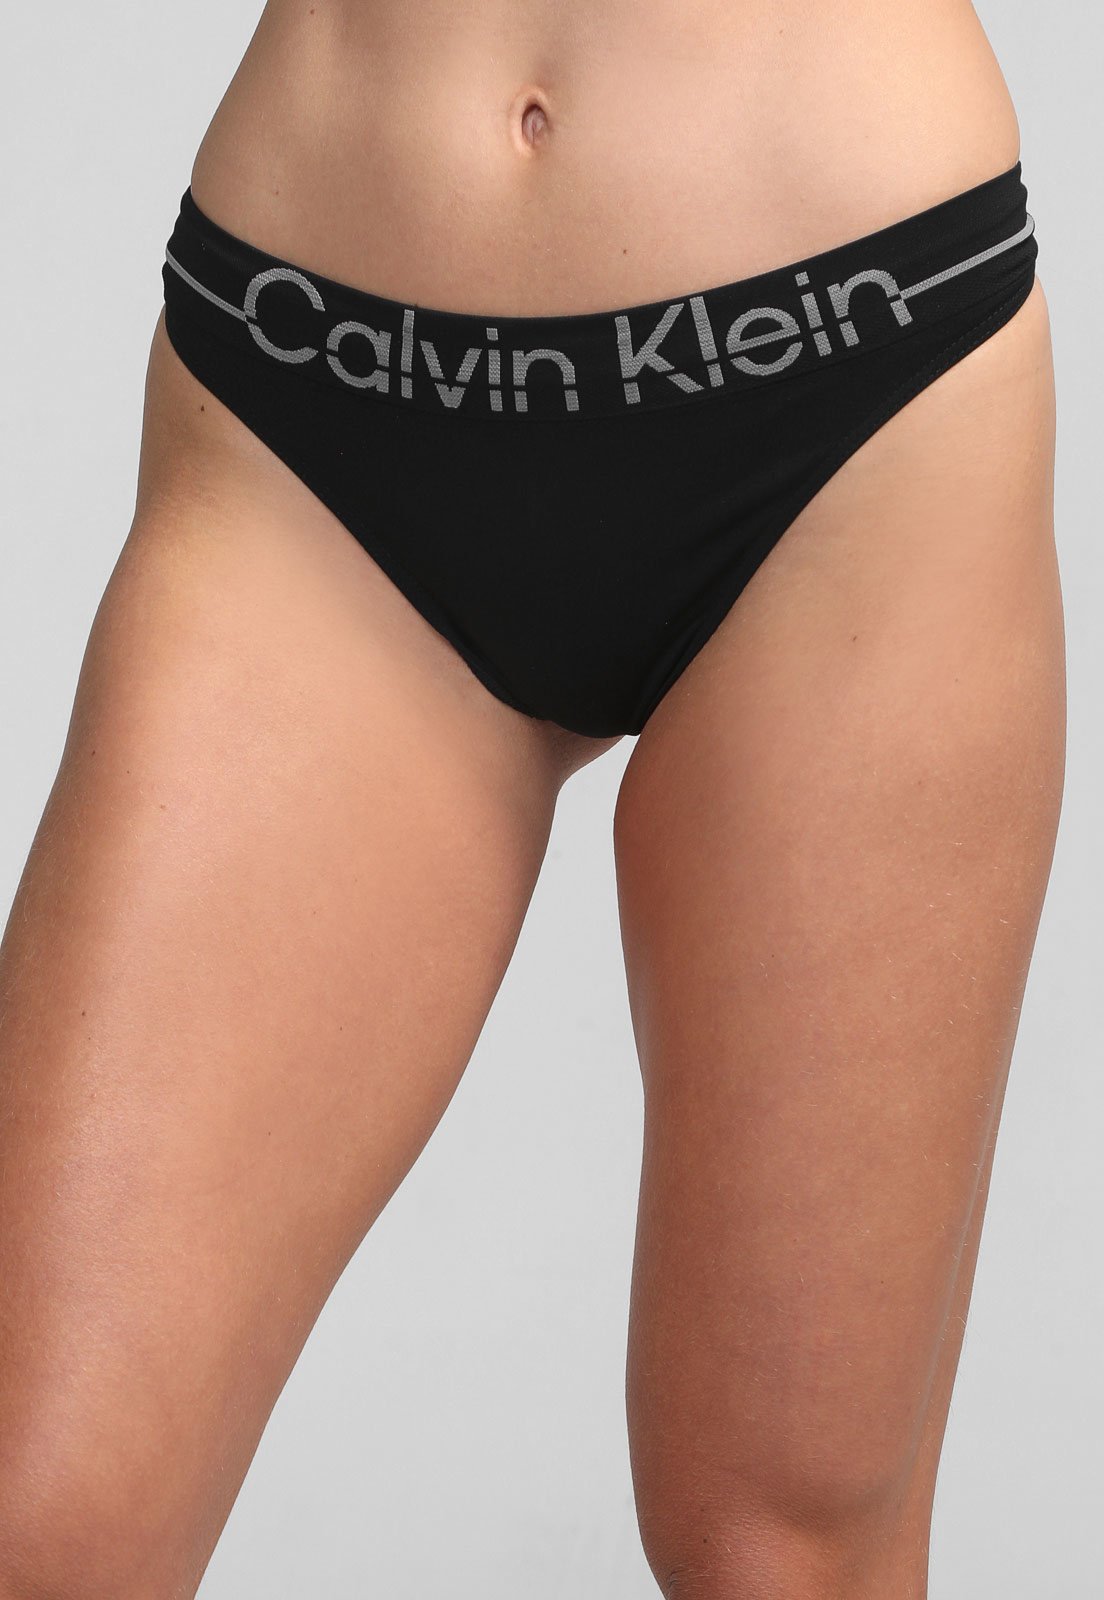 Calcinha Calvin Klein Underwear String Preta - Compre Agora